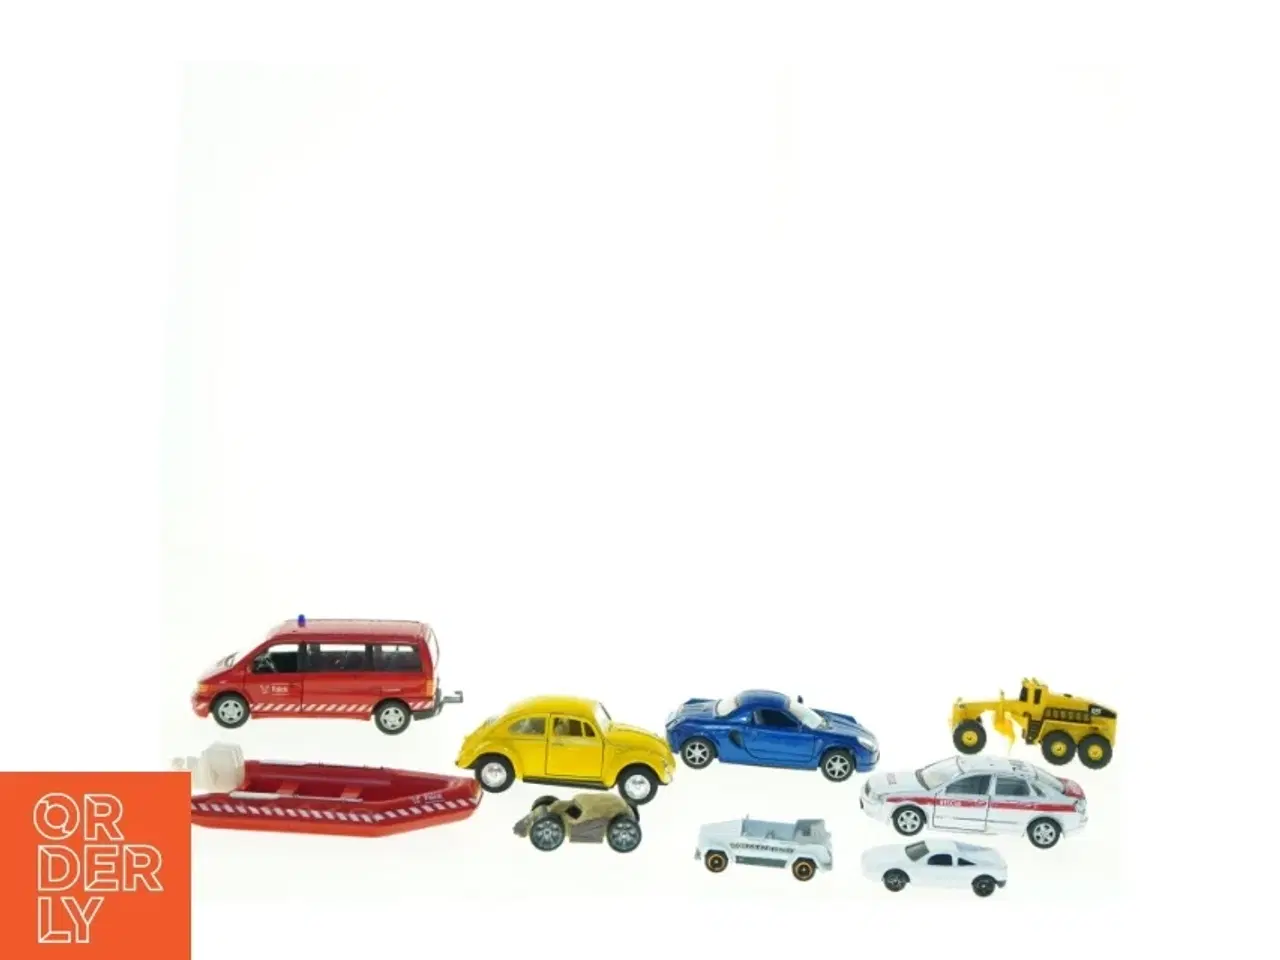 Billede 3 - Samling af diverse legetøjsbiler (str. 13 x 6 cm)